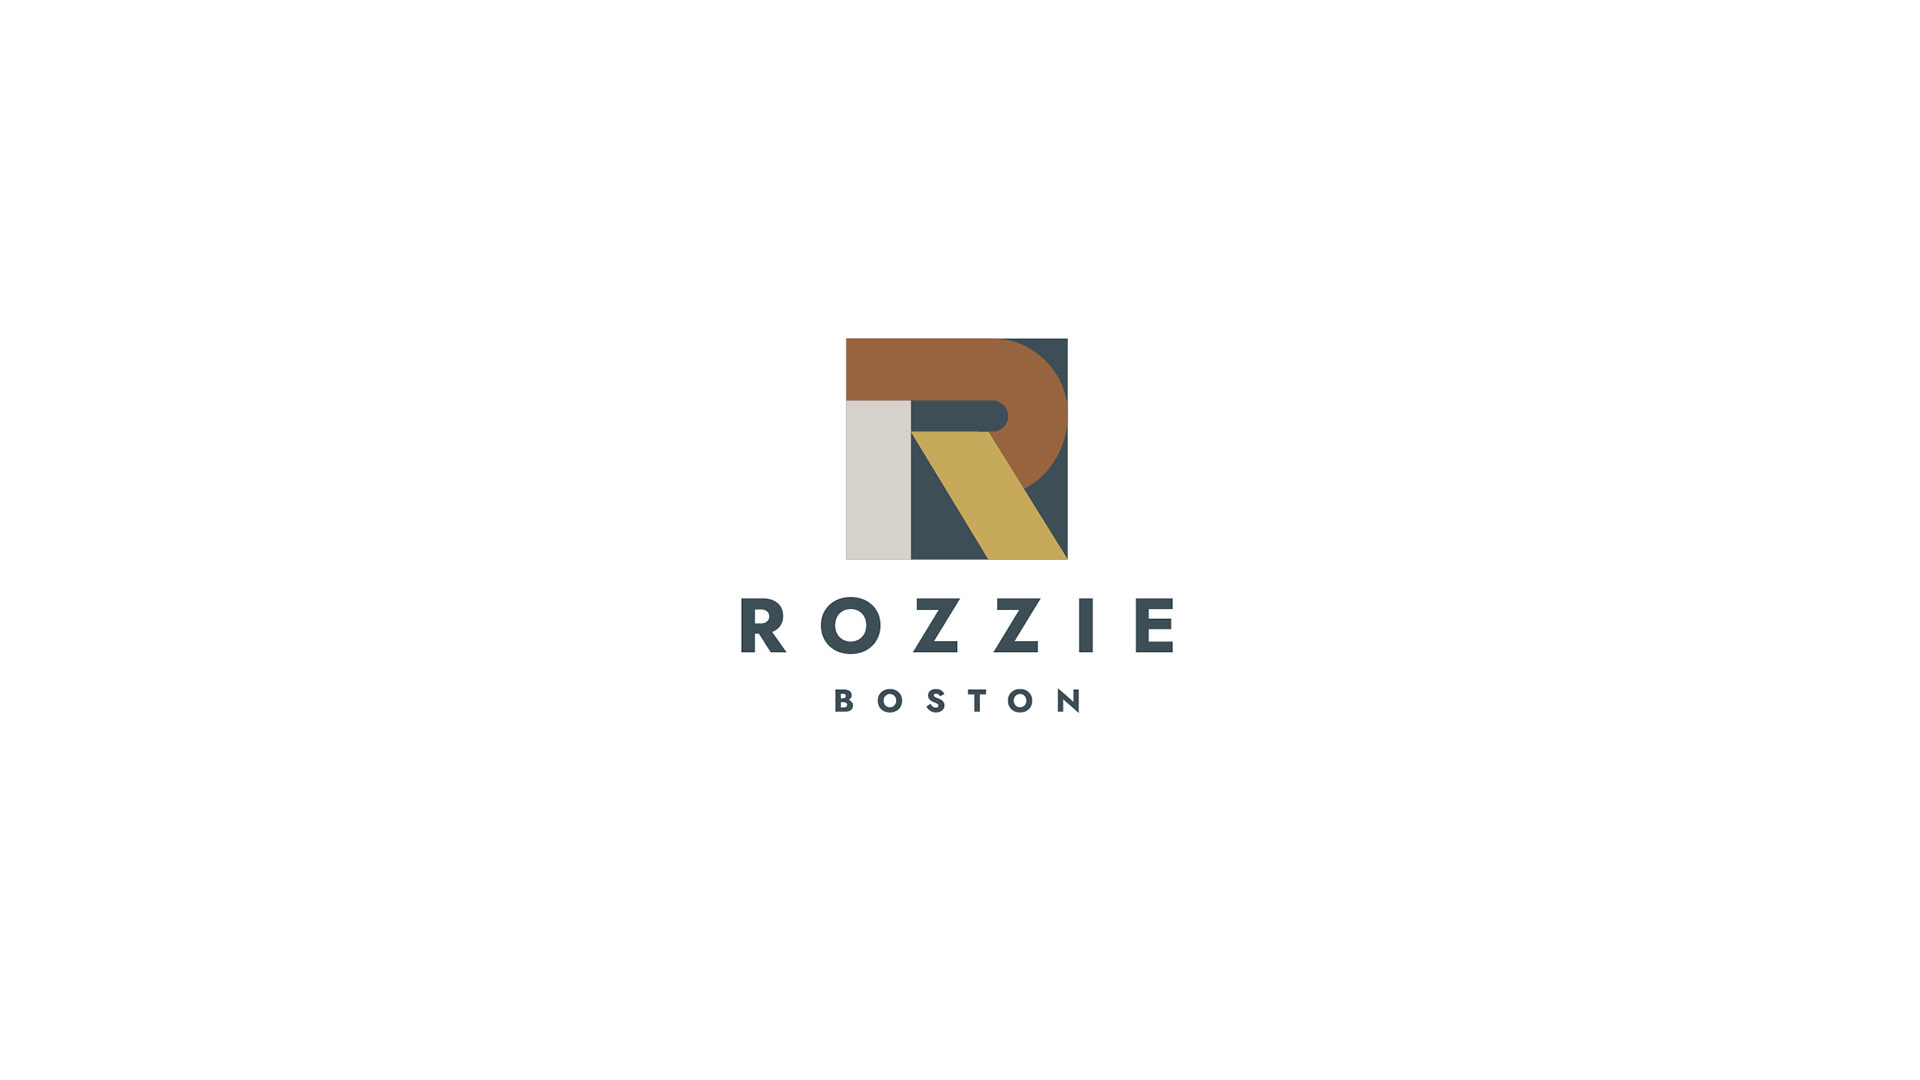 rozzie boston logo on white